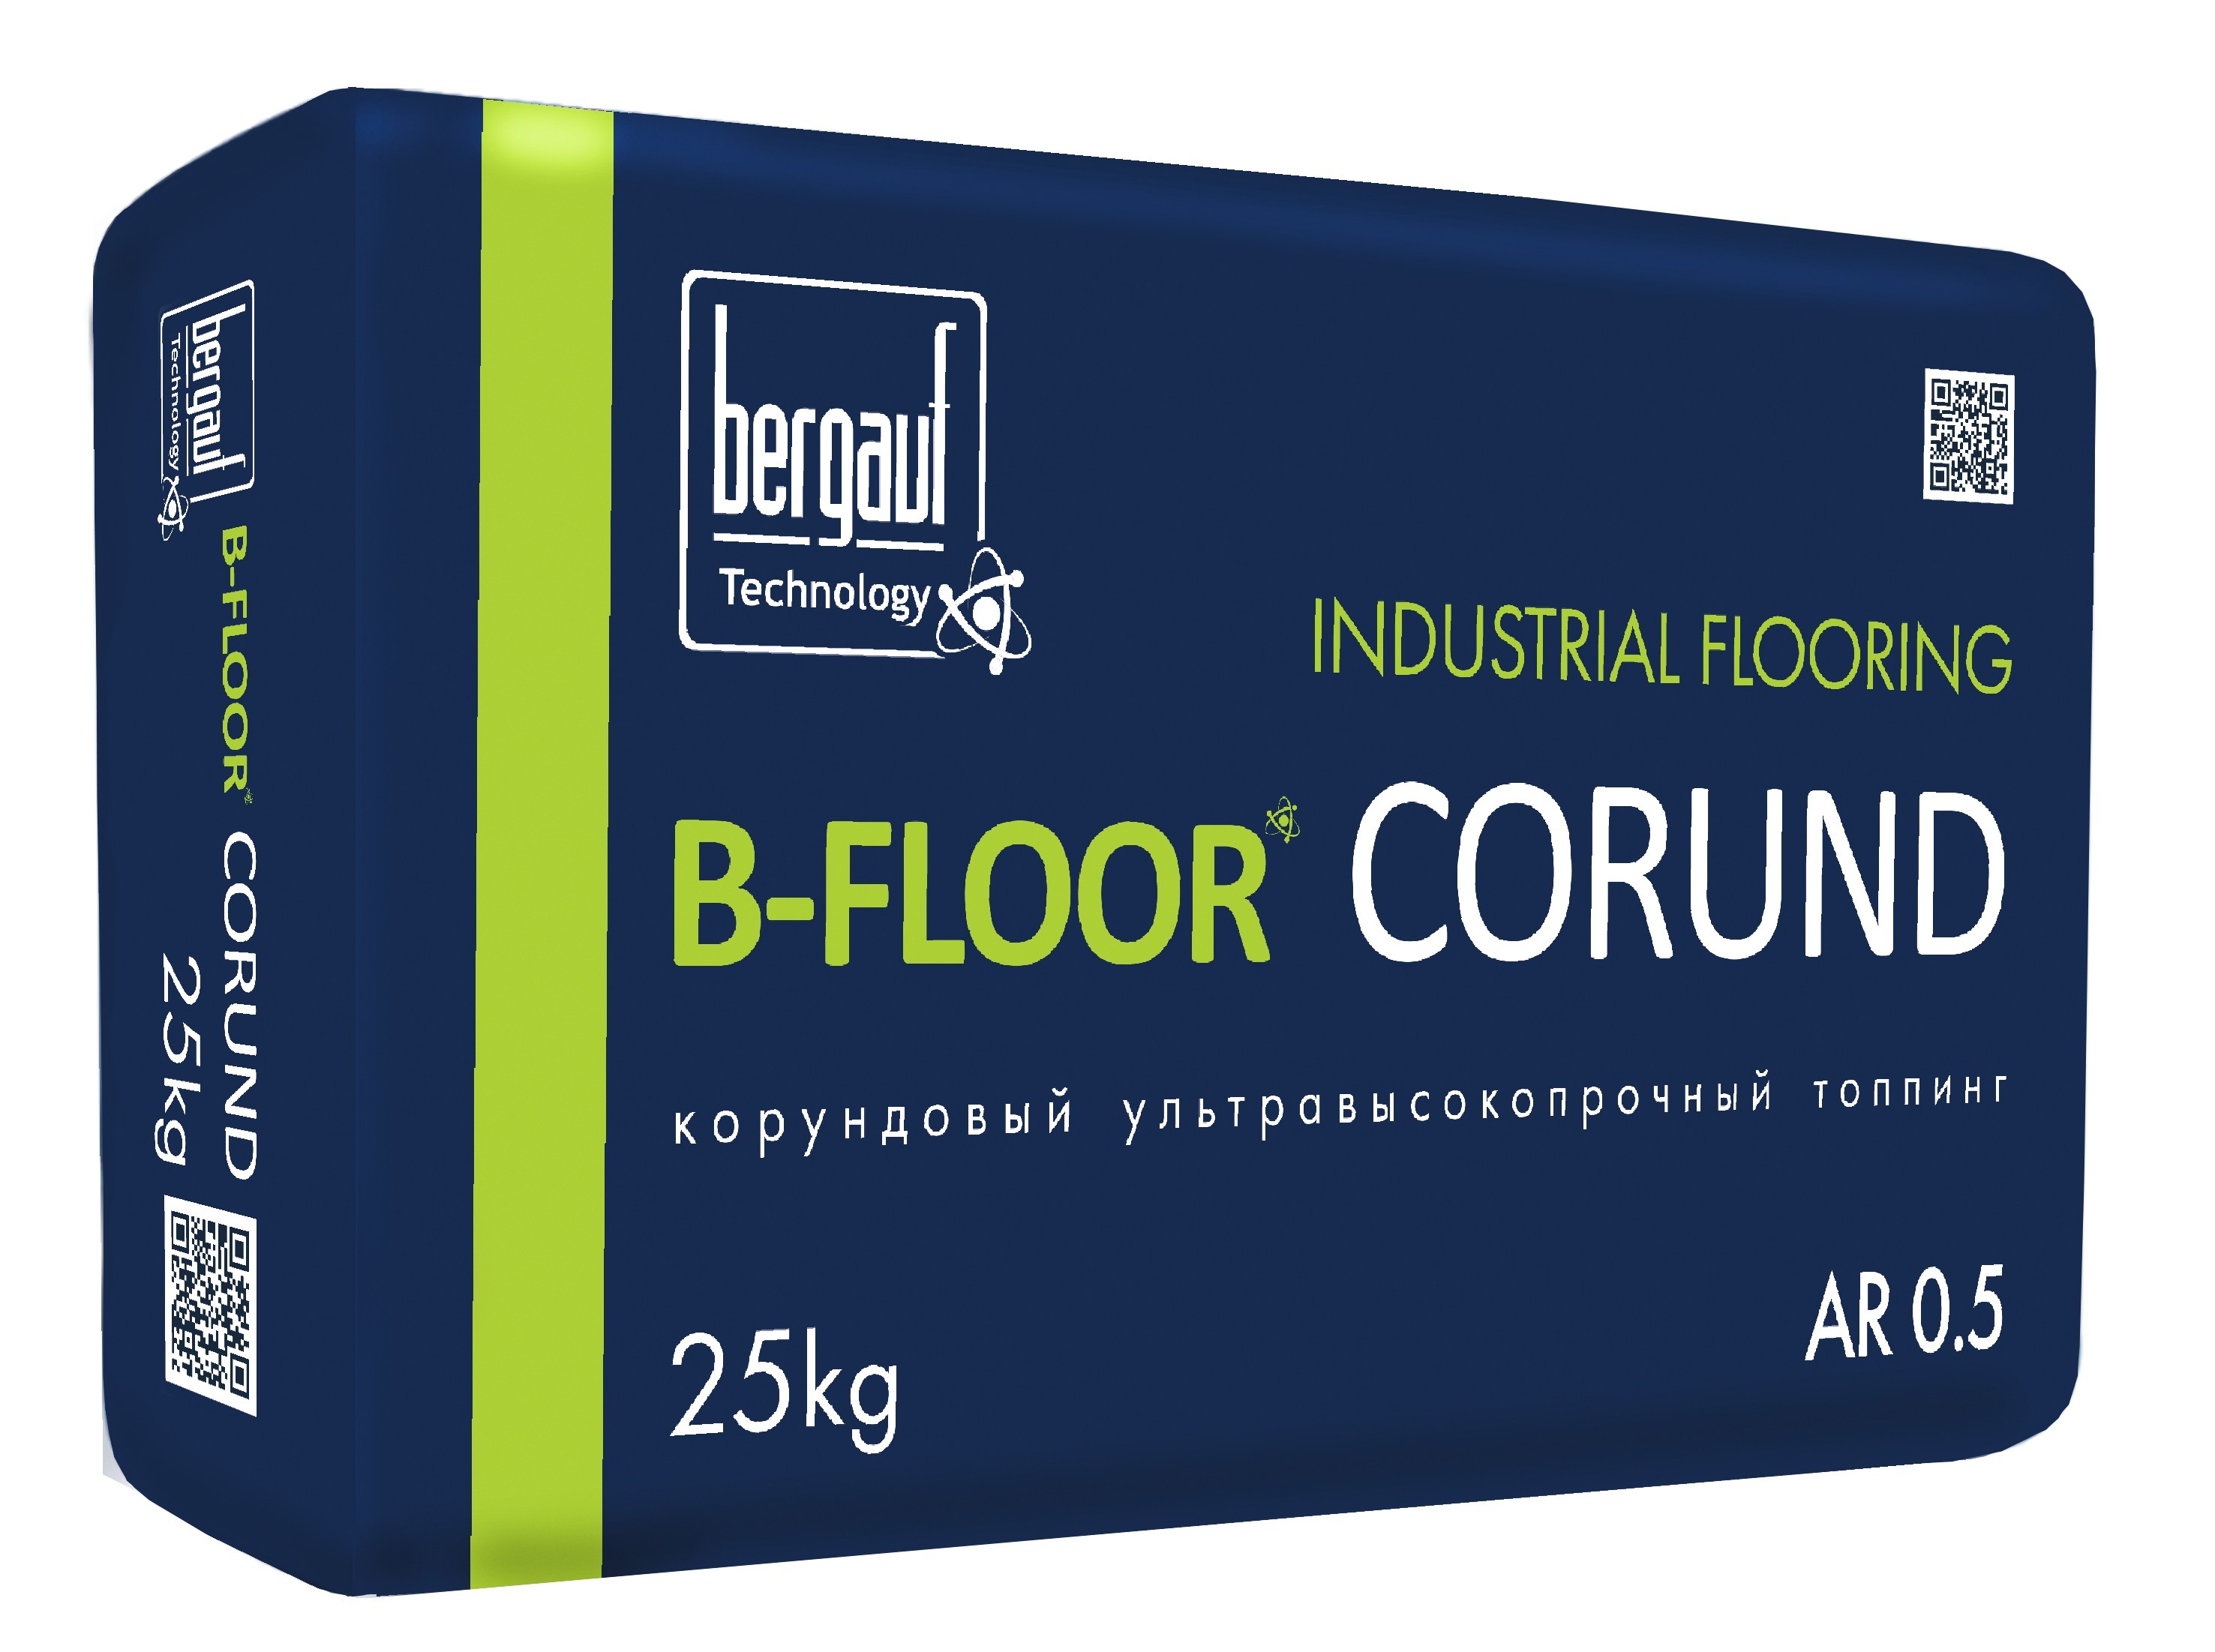 B-Floor Corund